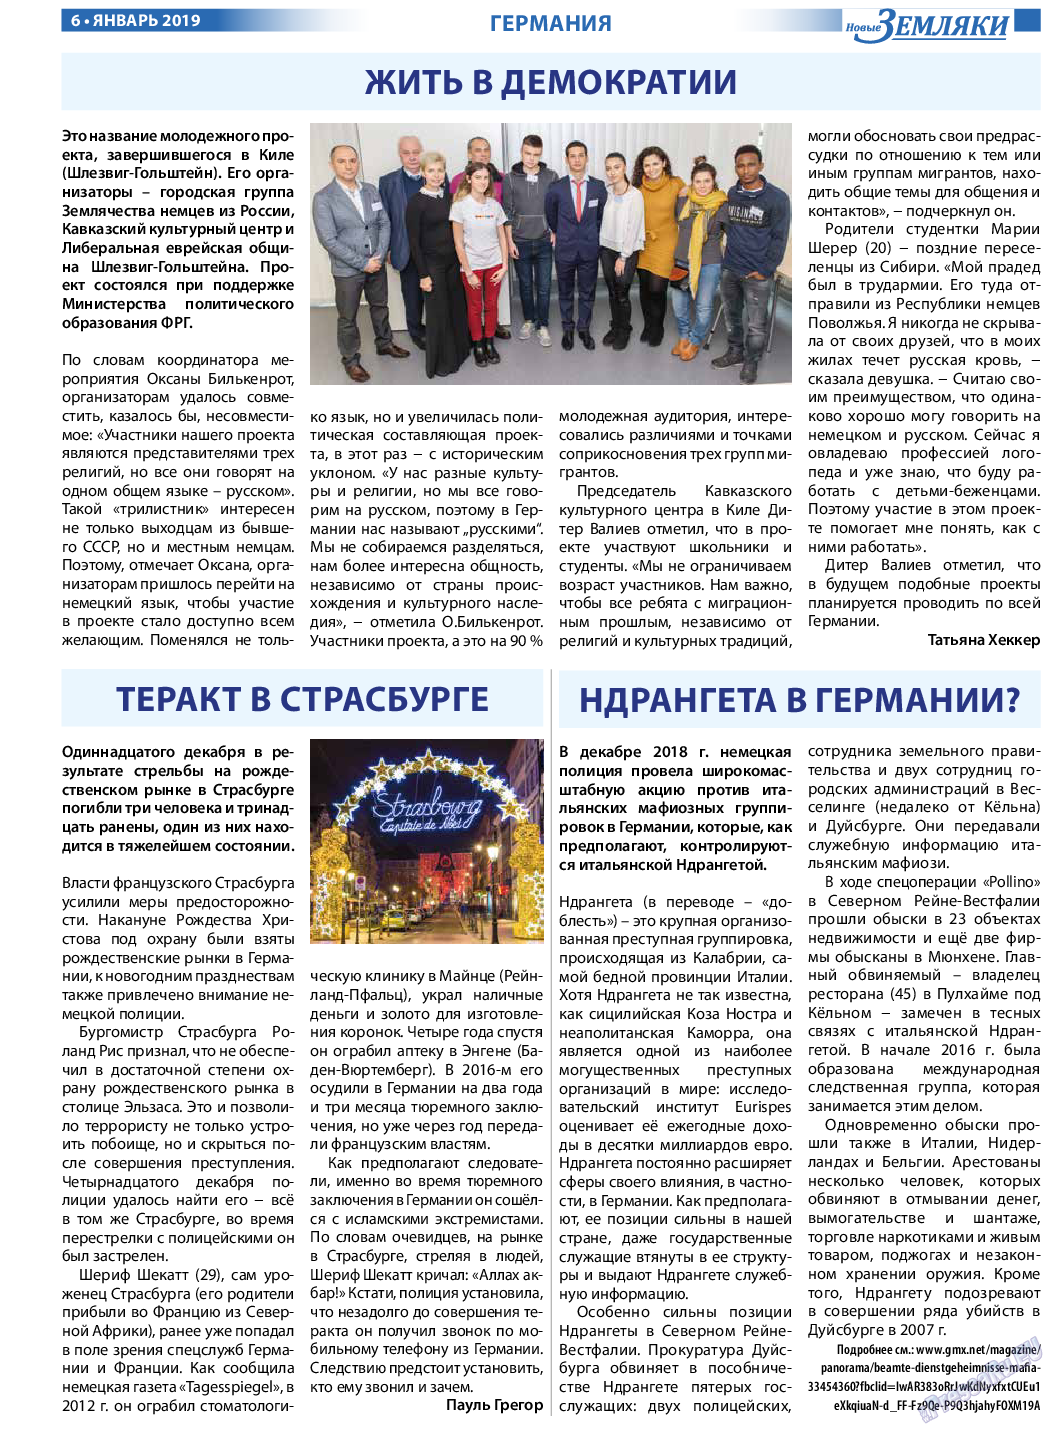 Новые Земляки (газета). 2019 год, номер 1, стр. 6